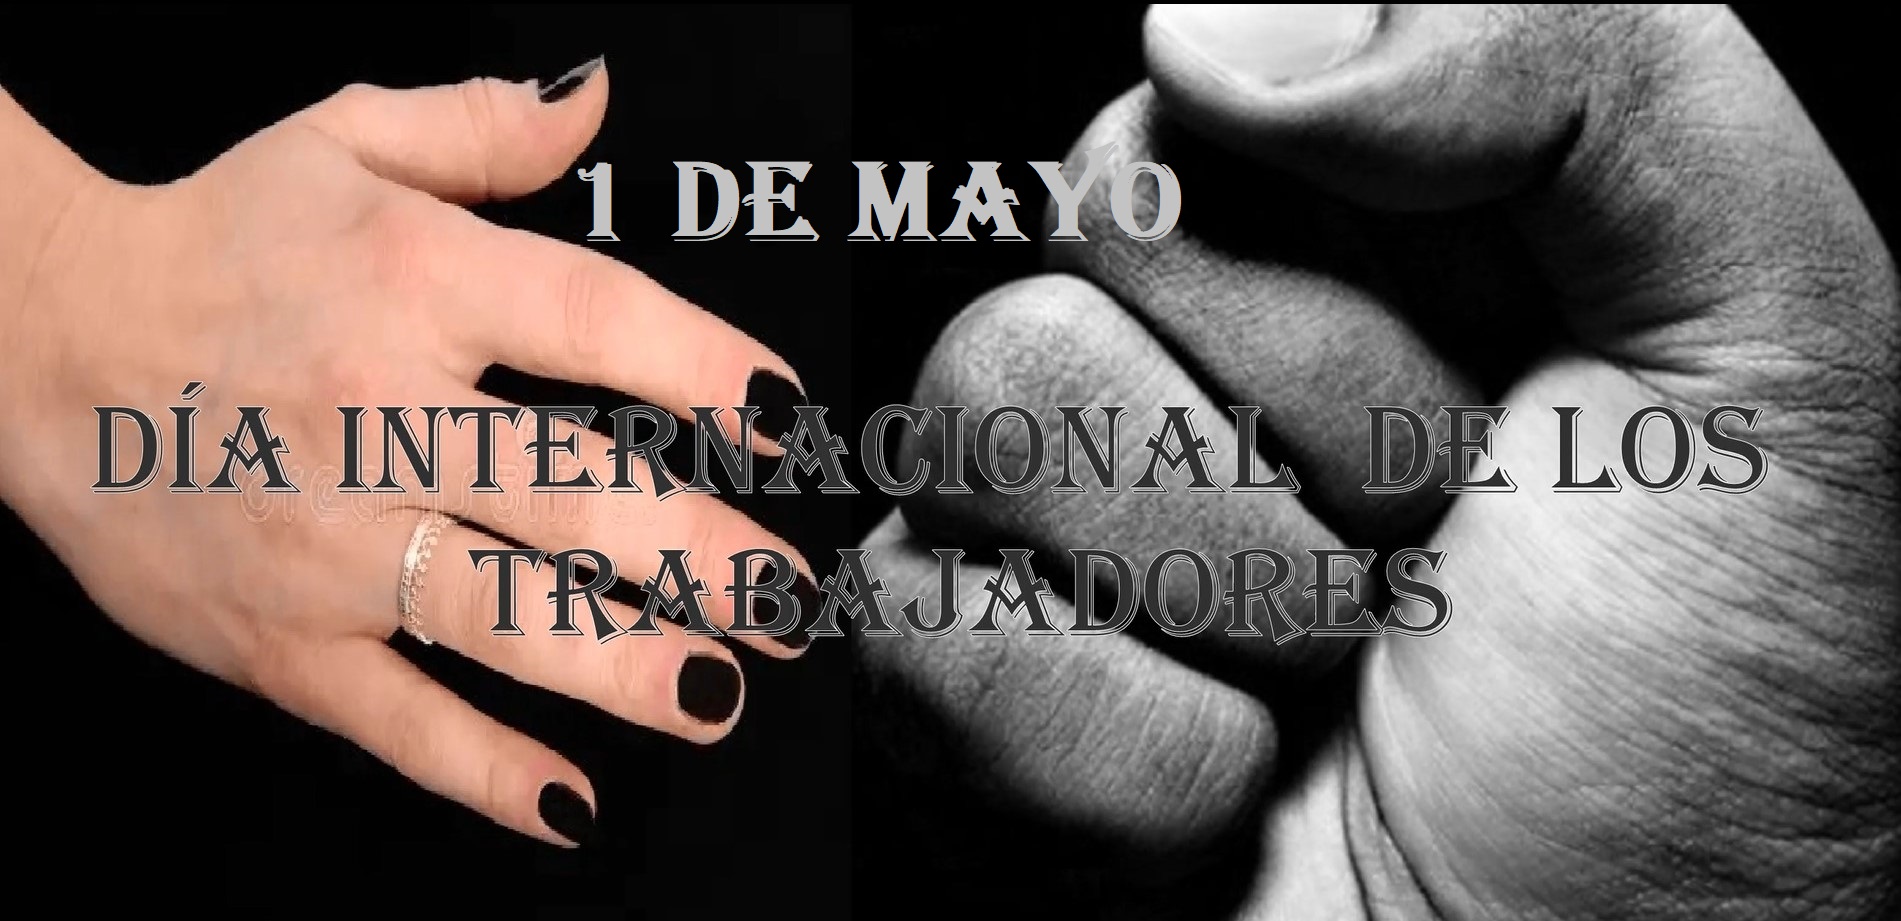 1 de mayo "Día Internacional de los Trabajadores" se celebra hoy en gran parte del mundo.